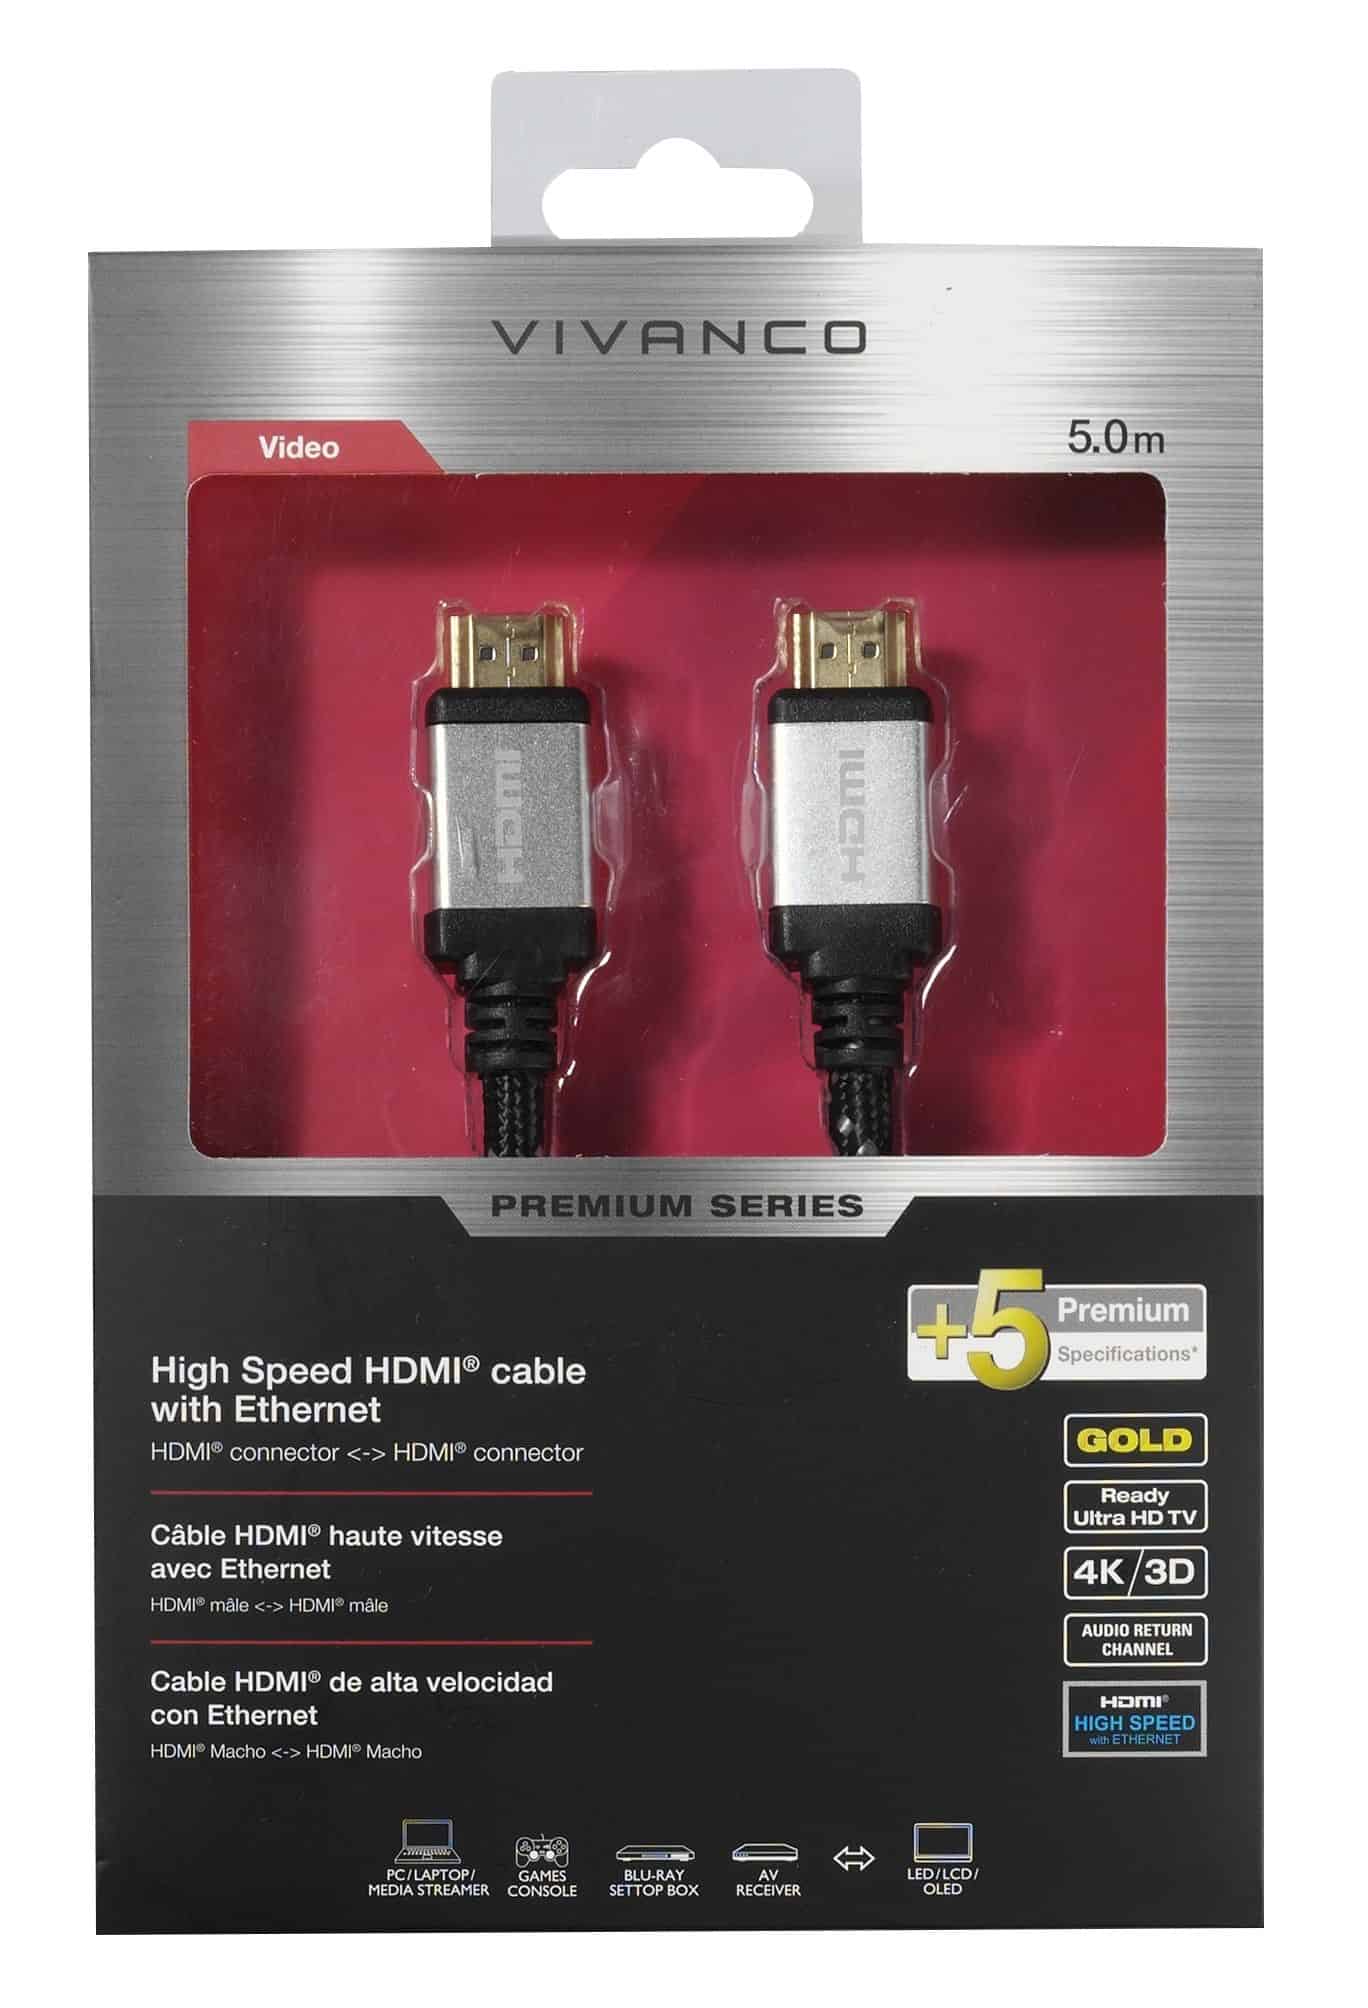 Vivanco Pre HDHD 50 HDMI Cable 5mtr (Premium) 